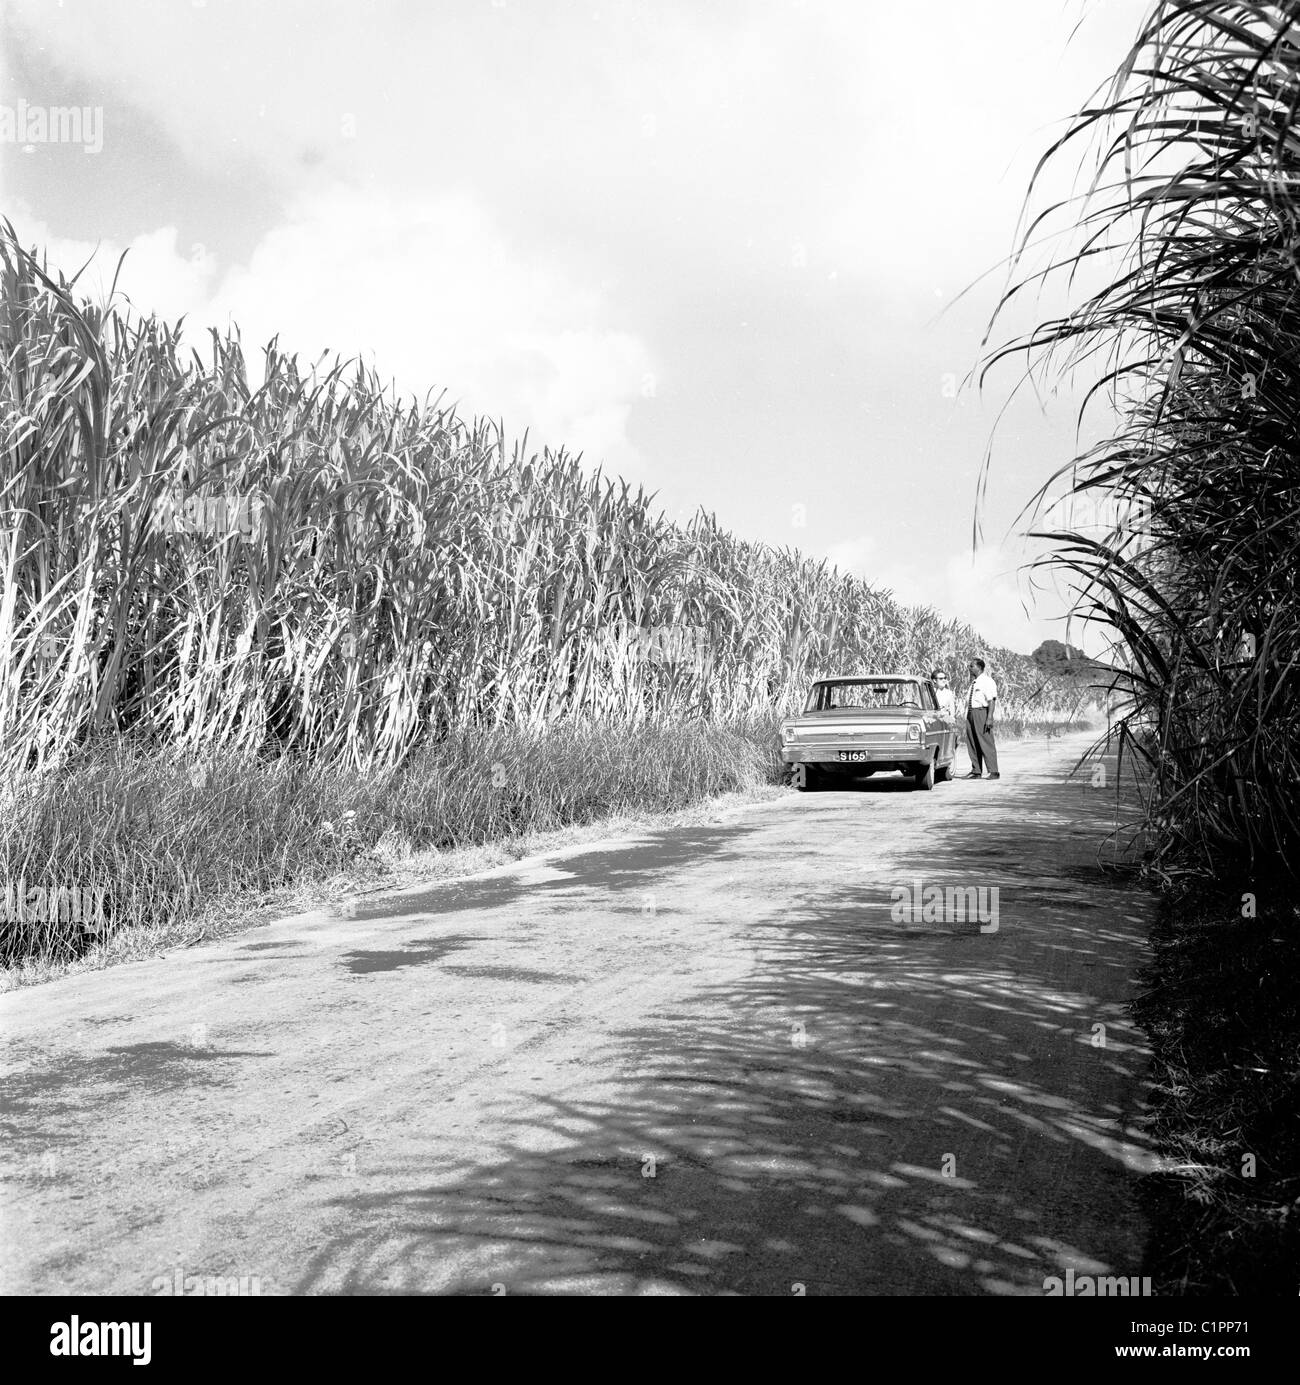 Barbados der 1950er Jahre. Mann und Auto geparkt auf einer leeren Straße neben Feldern hoch wachsenden Pflanzen in diesem historischen Bild. Stockfoto